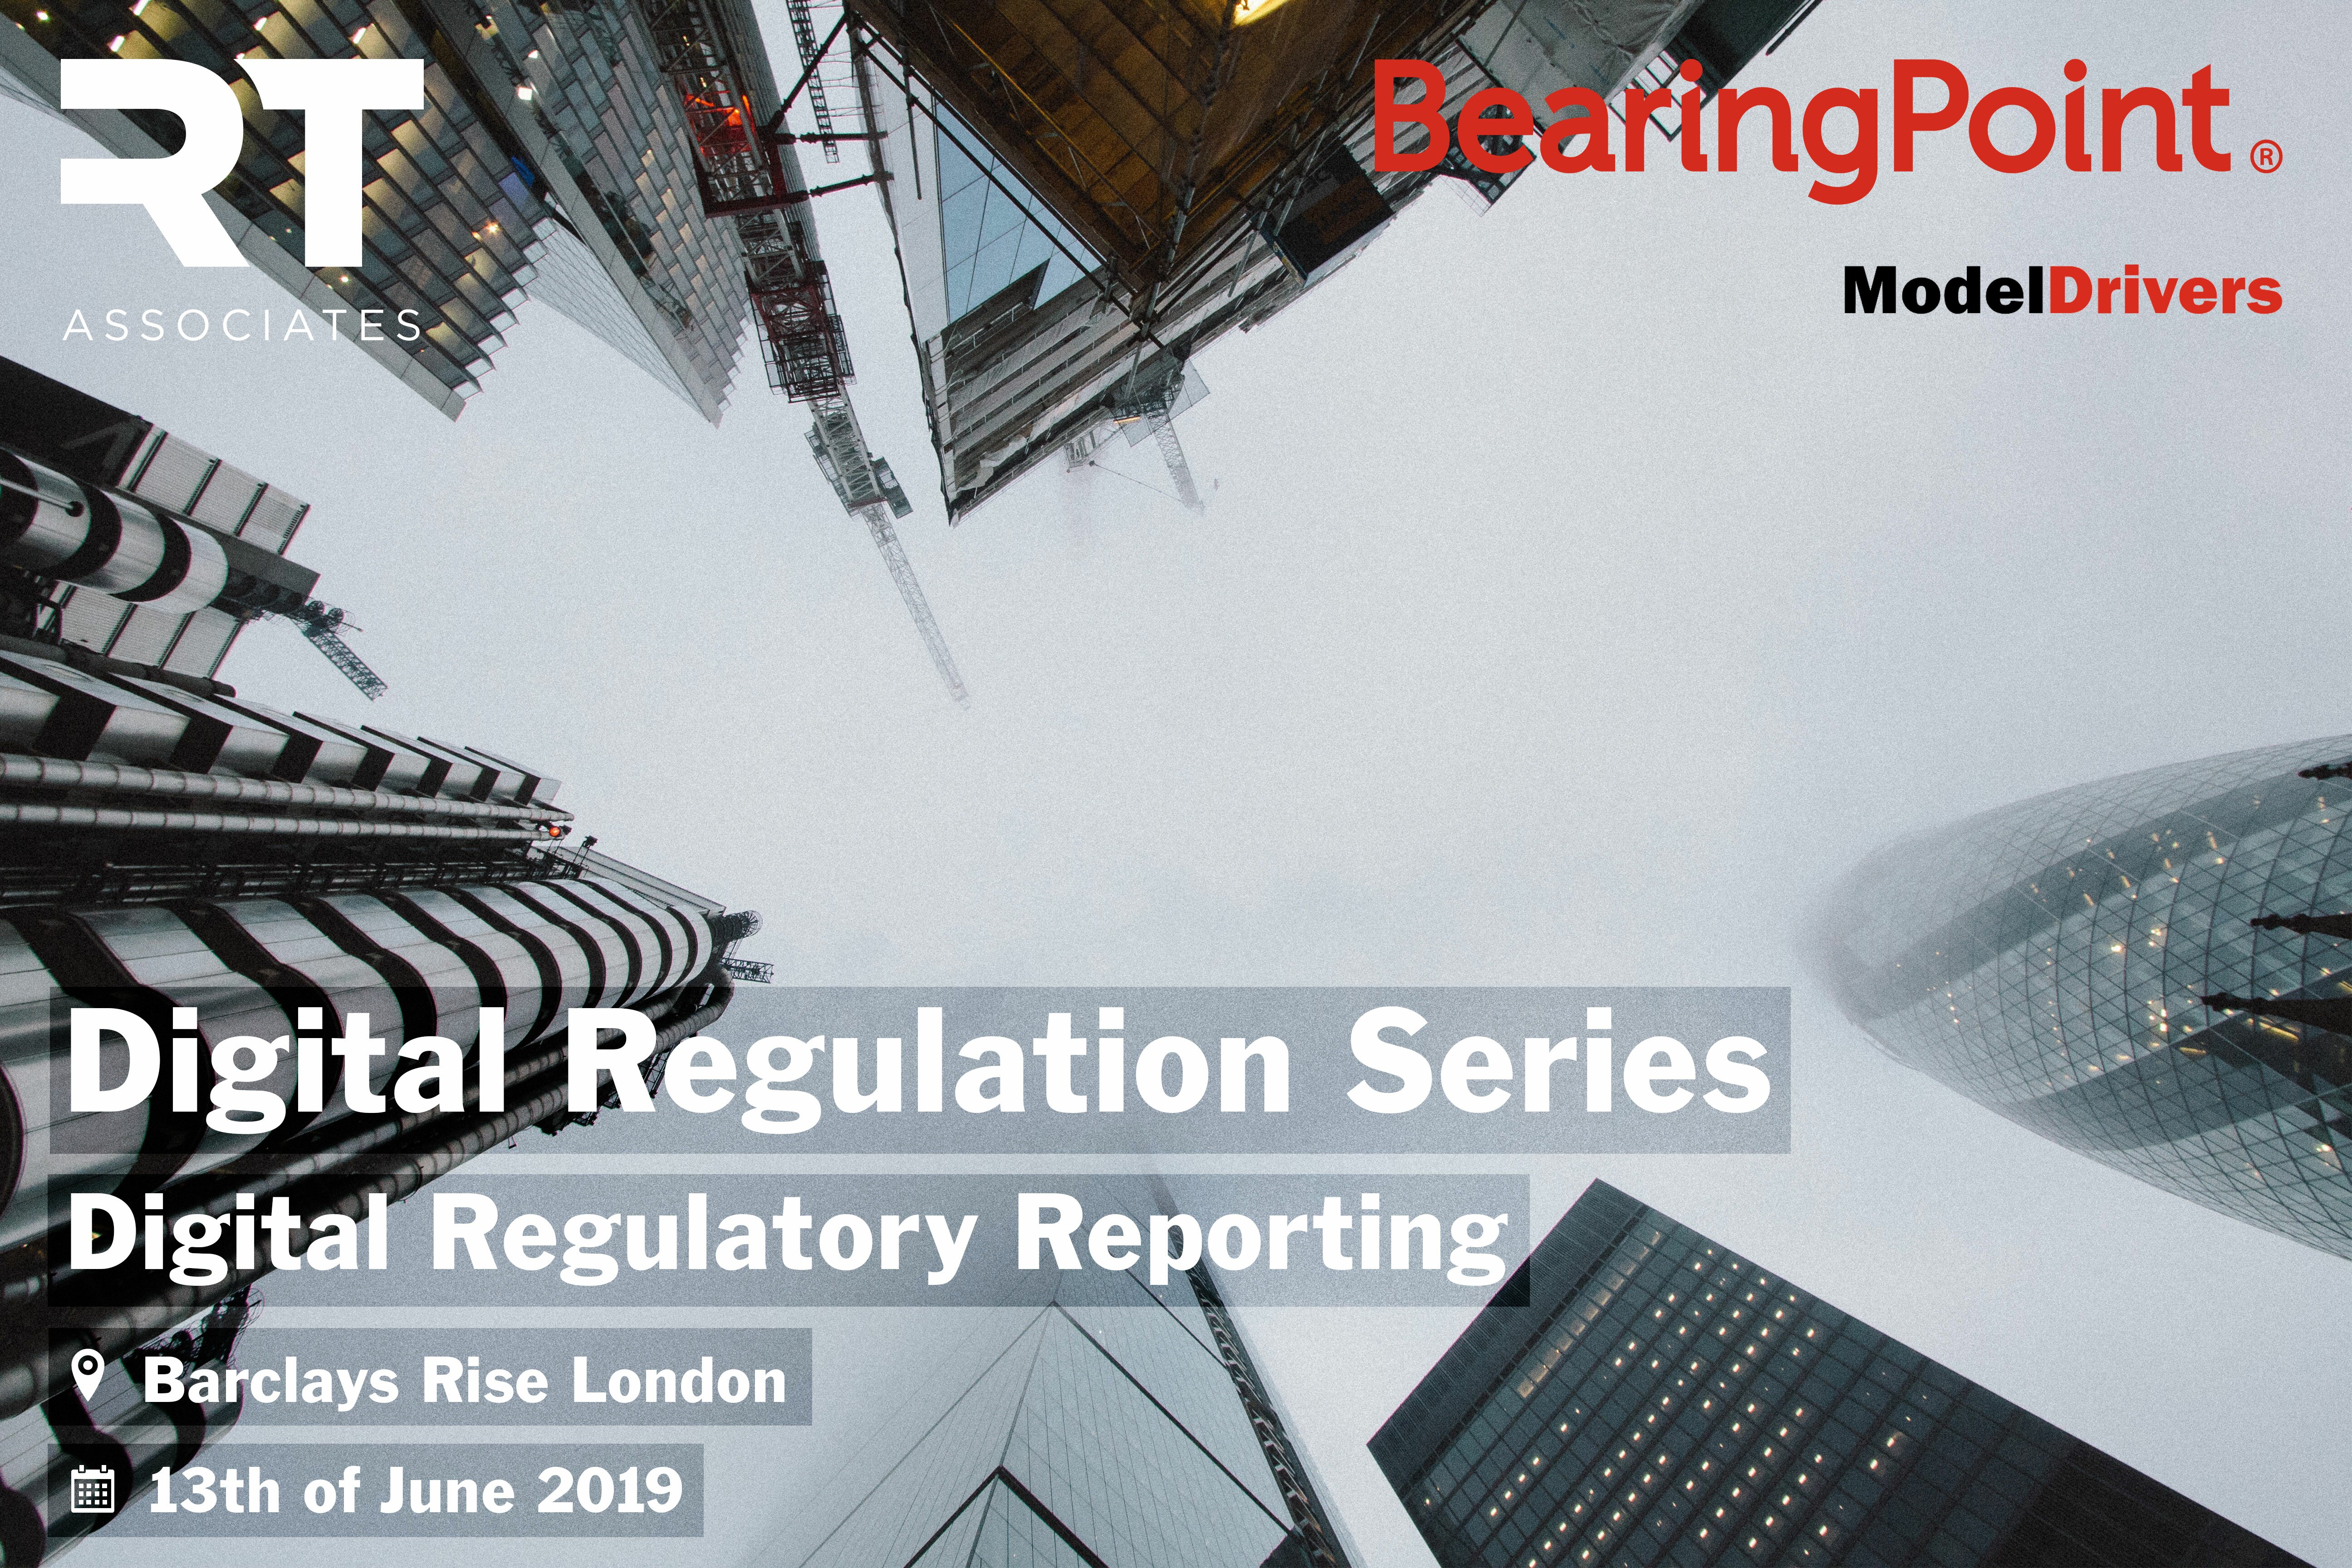 Digital Regulatory Reporting